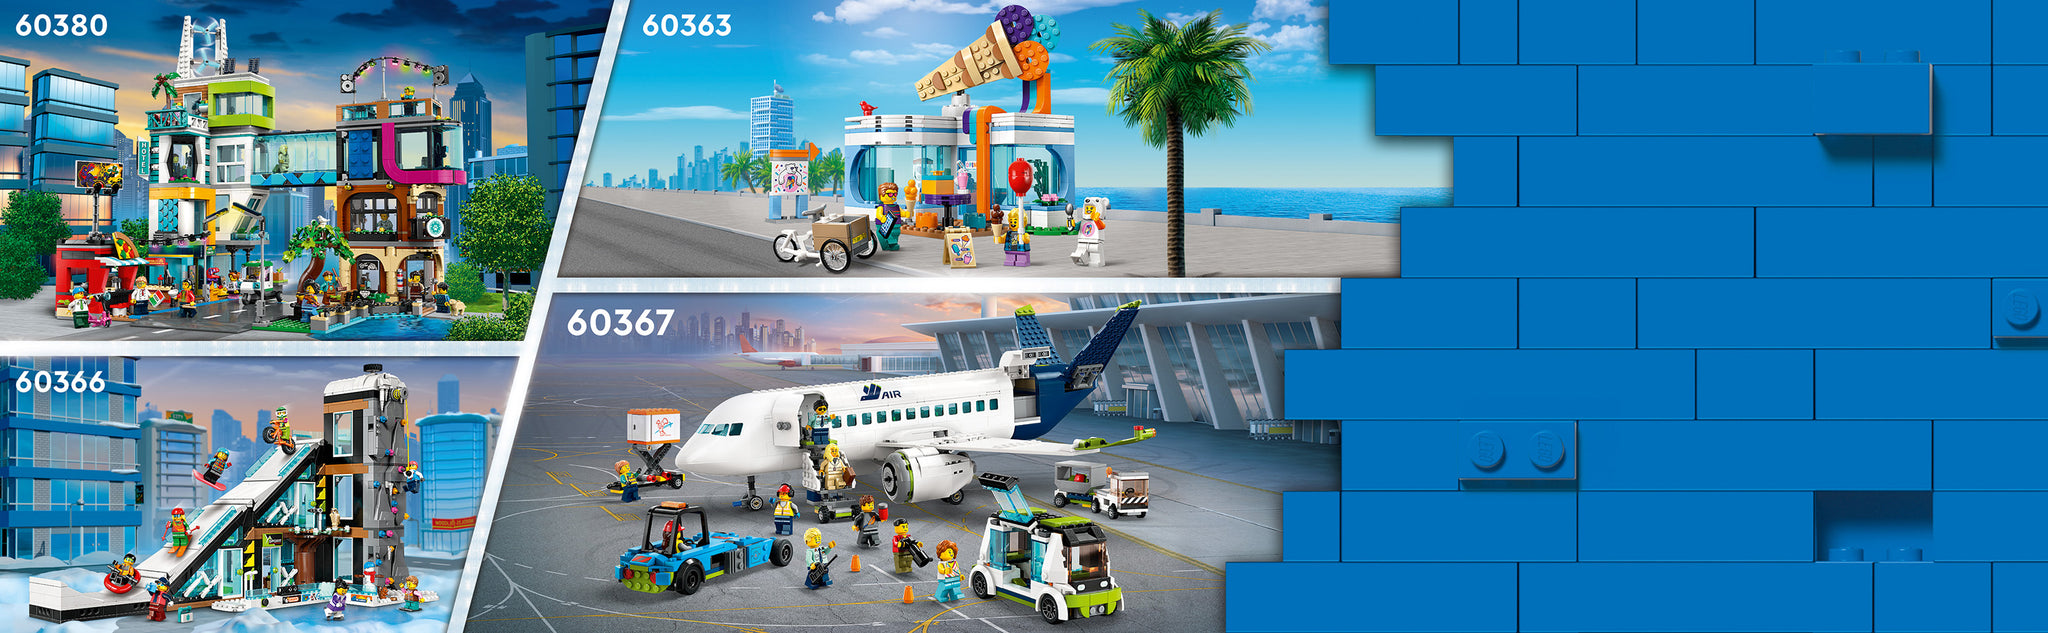 Een traktatie voor fans van modelvliegtuigen! Deze LEGO® City Passagiersvliegtuig (60367) set voor kinderen van 7 jaar en ouder zit boordevol realistische kenmerken. Het toestel heeft een gedetailleerd interieur met een cockpit, stoelen, een gangpad en een toilet en wordt geleverd met een luchttrap, platformbus, sleepwagen, cateringwagen en bagagekarretje, plus 9 minifiguren.  Inclusief interactieve bouwinstructies Deze speelset bevat eenvoudig te volgen gedrukte bouwinstructies en stapsgewijze 3D-instructies in de LEGO Builder app. Hier kunnen kinderen tijdens het bouwen inzoomen, modellen draaien en ze vanuit alle hoeken bekijken. In de app kunnen ze ook de bouwvoortgang bijhouden en virtuele speelsets opslaan.  Geweldige LEGO City voertuigen Kinderen zien overal om zich heen interessante voertuigen en machines. Met de LEGO City bouwsets kunnen ze die van dichtbij ontdekken met realistische modellen en leuke personages die inspiratie bieden voor onbegrensd fantasierijk speelplezier.  Bouw- en speelset van modelvliegtuig en grondvoertuigen – LEGO® City Passagiersvliegtuig (60367) set met realistische details en kenmerken Wat zit er in de doos? – deze speelset bevat alles wat kinderen nodig hebben om een passagiersvliegtuig, een luchttrap, een platformbus, een sleepwagen, een cateringtruck en een bagagekarretje te bouwen, plus 9 minifiguren Kenmerken en functies – kinderen kunnen de cateringtruck besturen om voorraden in te laden en het dak van het vliegtuig is afneembaar voor toegang tot de gedetailleerde cockpit, de stoelen, het gangpad, het toilet en de cateringruimte Een traktatie voor fans van speelgoedvliegtuigen – een leuk verjaardagscadeau voor kinderen vanaf 7 jaar en een fraai geschenk voor de feestdagen Volop ruimte om te spelen – het passagiersvliegtuig is ca. 19 cm hoog, 47 cm lang en 44 cm breed Leuke accessoires voor extra speelplezier – LEGO® minifiguuraccessoires zijn onder andere een koffer, camera, rugzak, aktetas, walkietalkie, 2blikjes frisdrank en 2 bekers Interactieve instructies voor een leuke bouwervaring – met de LEGO® Builder app voor smartphones en tablets kunnen kinderen tijdens het bouwen inzoomen op de modellen in deze set en ze van alle kanten bekijken Onbegrensd creatief spelen – ga voor nog meer plezier en avonturen door deze set te combineren met andere sets uit het LEGO® City assortiment Kwaliteit gegarandeerd – alle LEGO® onderdelen voldoen aan strikte industrienormen, waardoor ze consistent, compatibel en leuk om mee te bouwen zijn Veiligheid gecontroleerd – LEGO® onderdelen worden gegooid, verhit, geplet, gedraaid en geanalyseerd om er zeker van te zijn dat ze voldoen aan strenge wereldwijde veiligheidsnormen